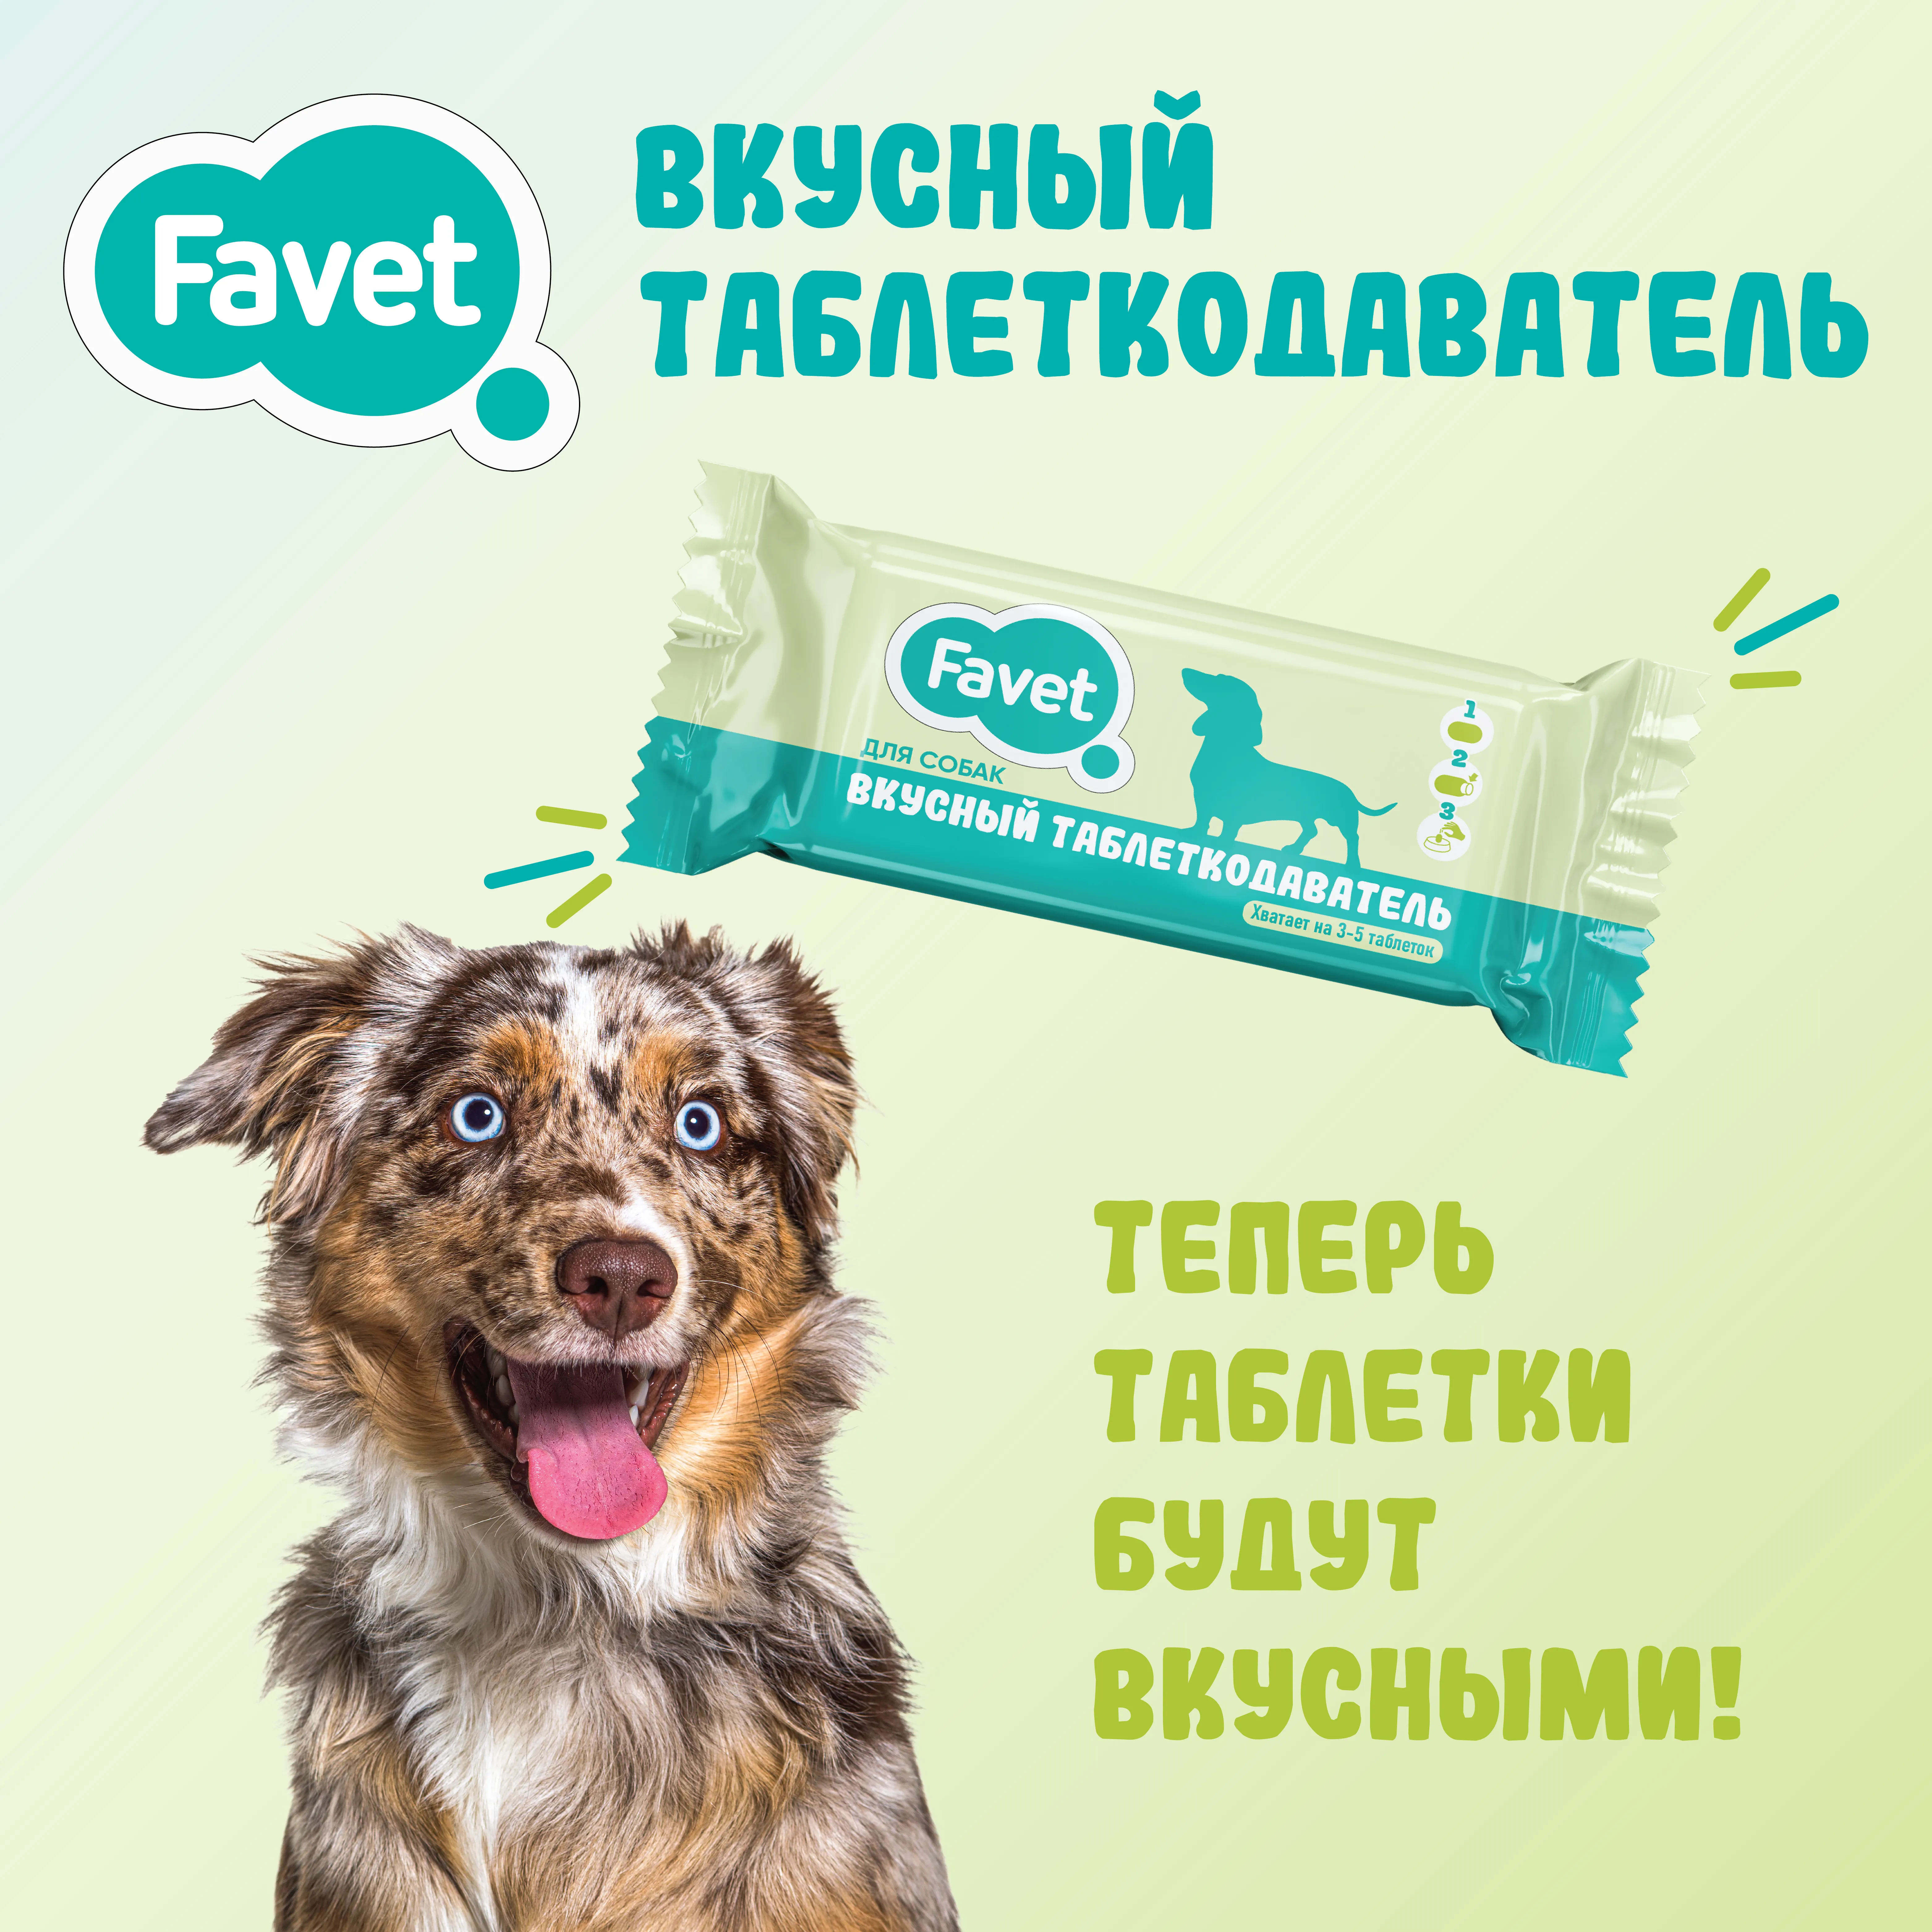 Favet Вкусный таблеткодаватель для собак, 1 шт.